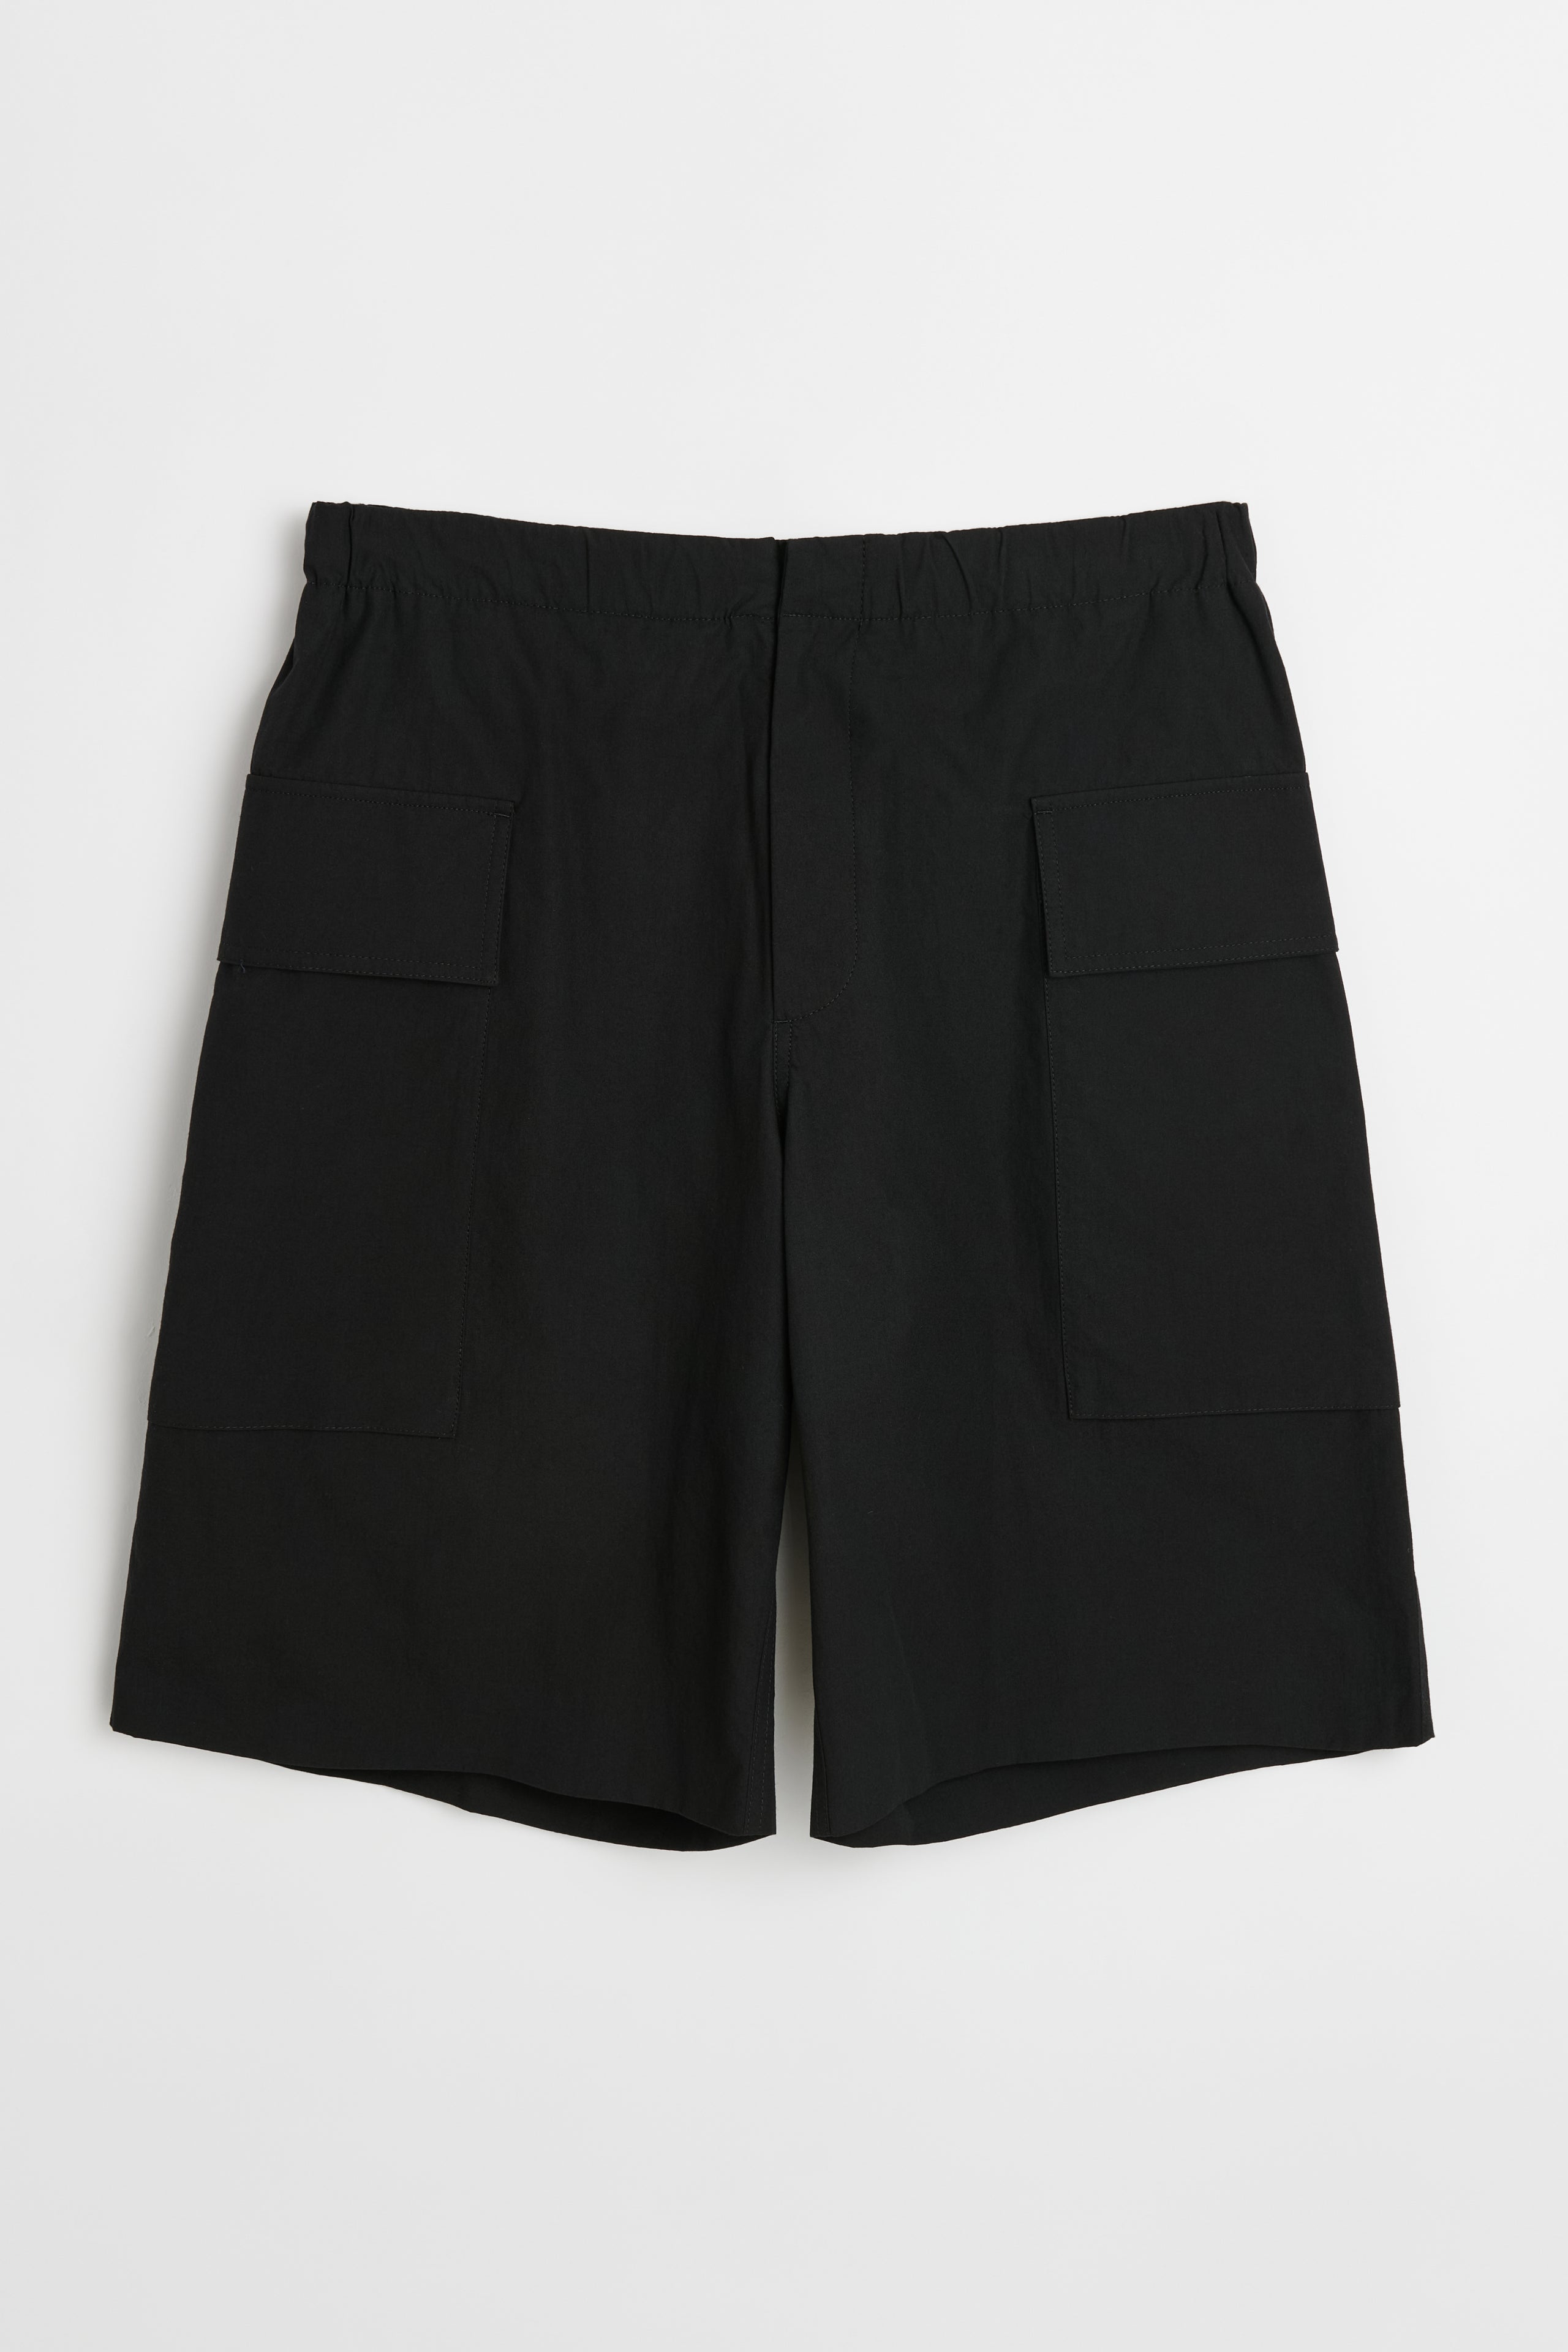 Jil Sander+ Trouser 94 Short Black